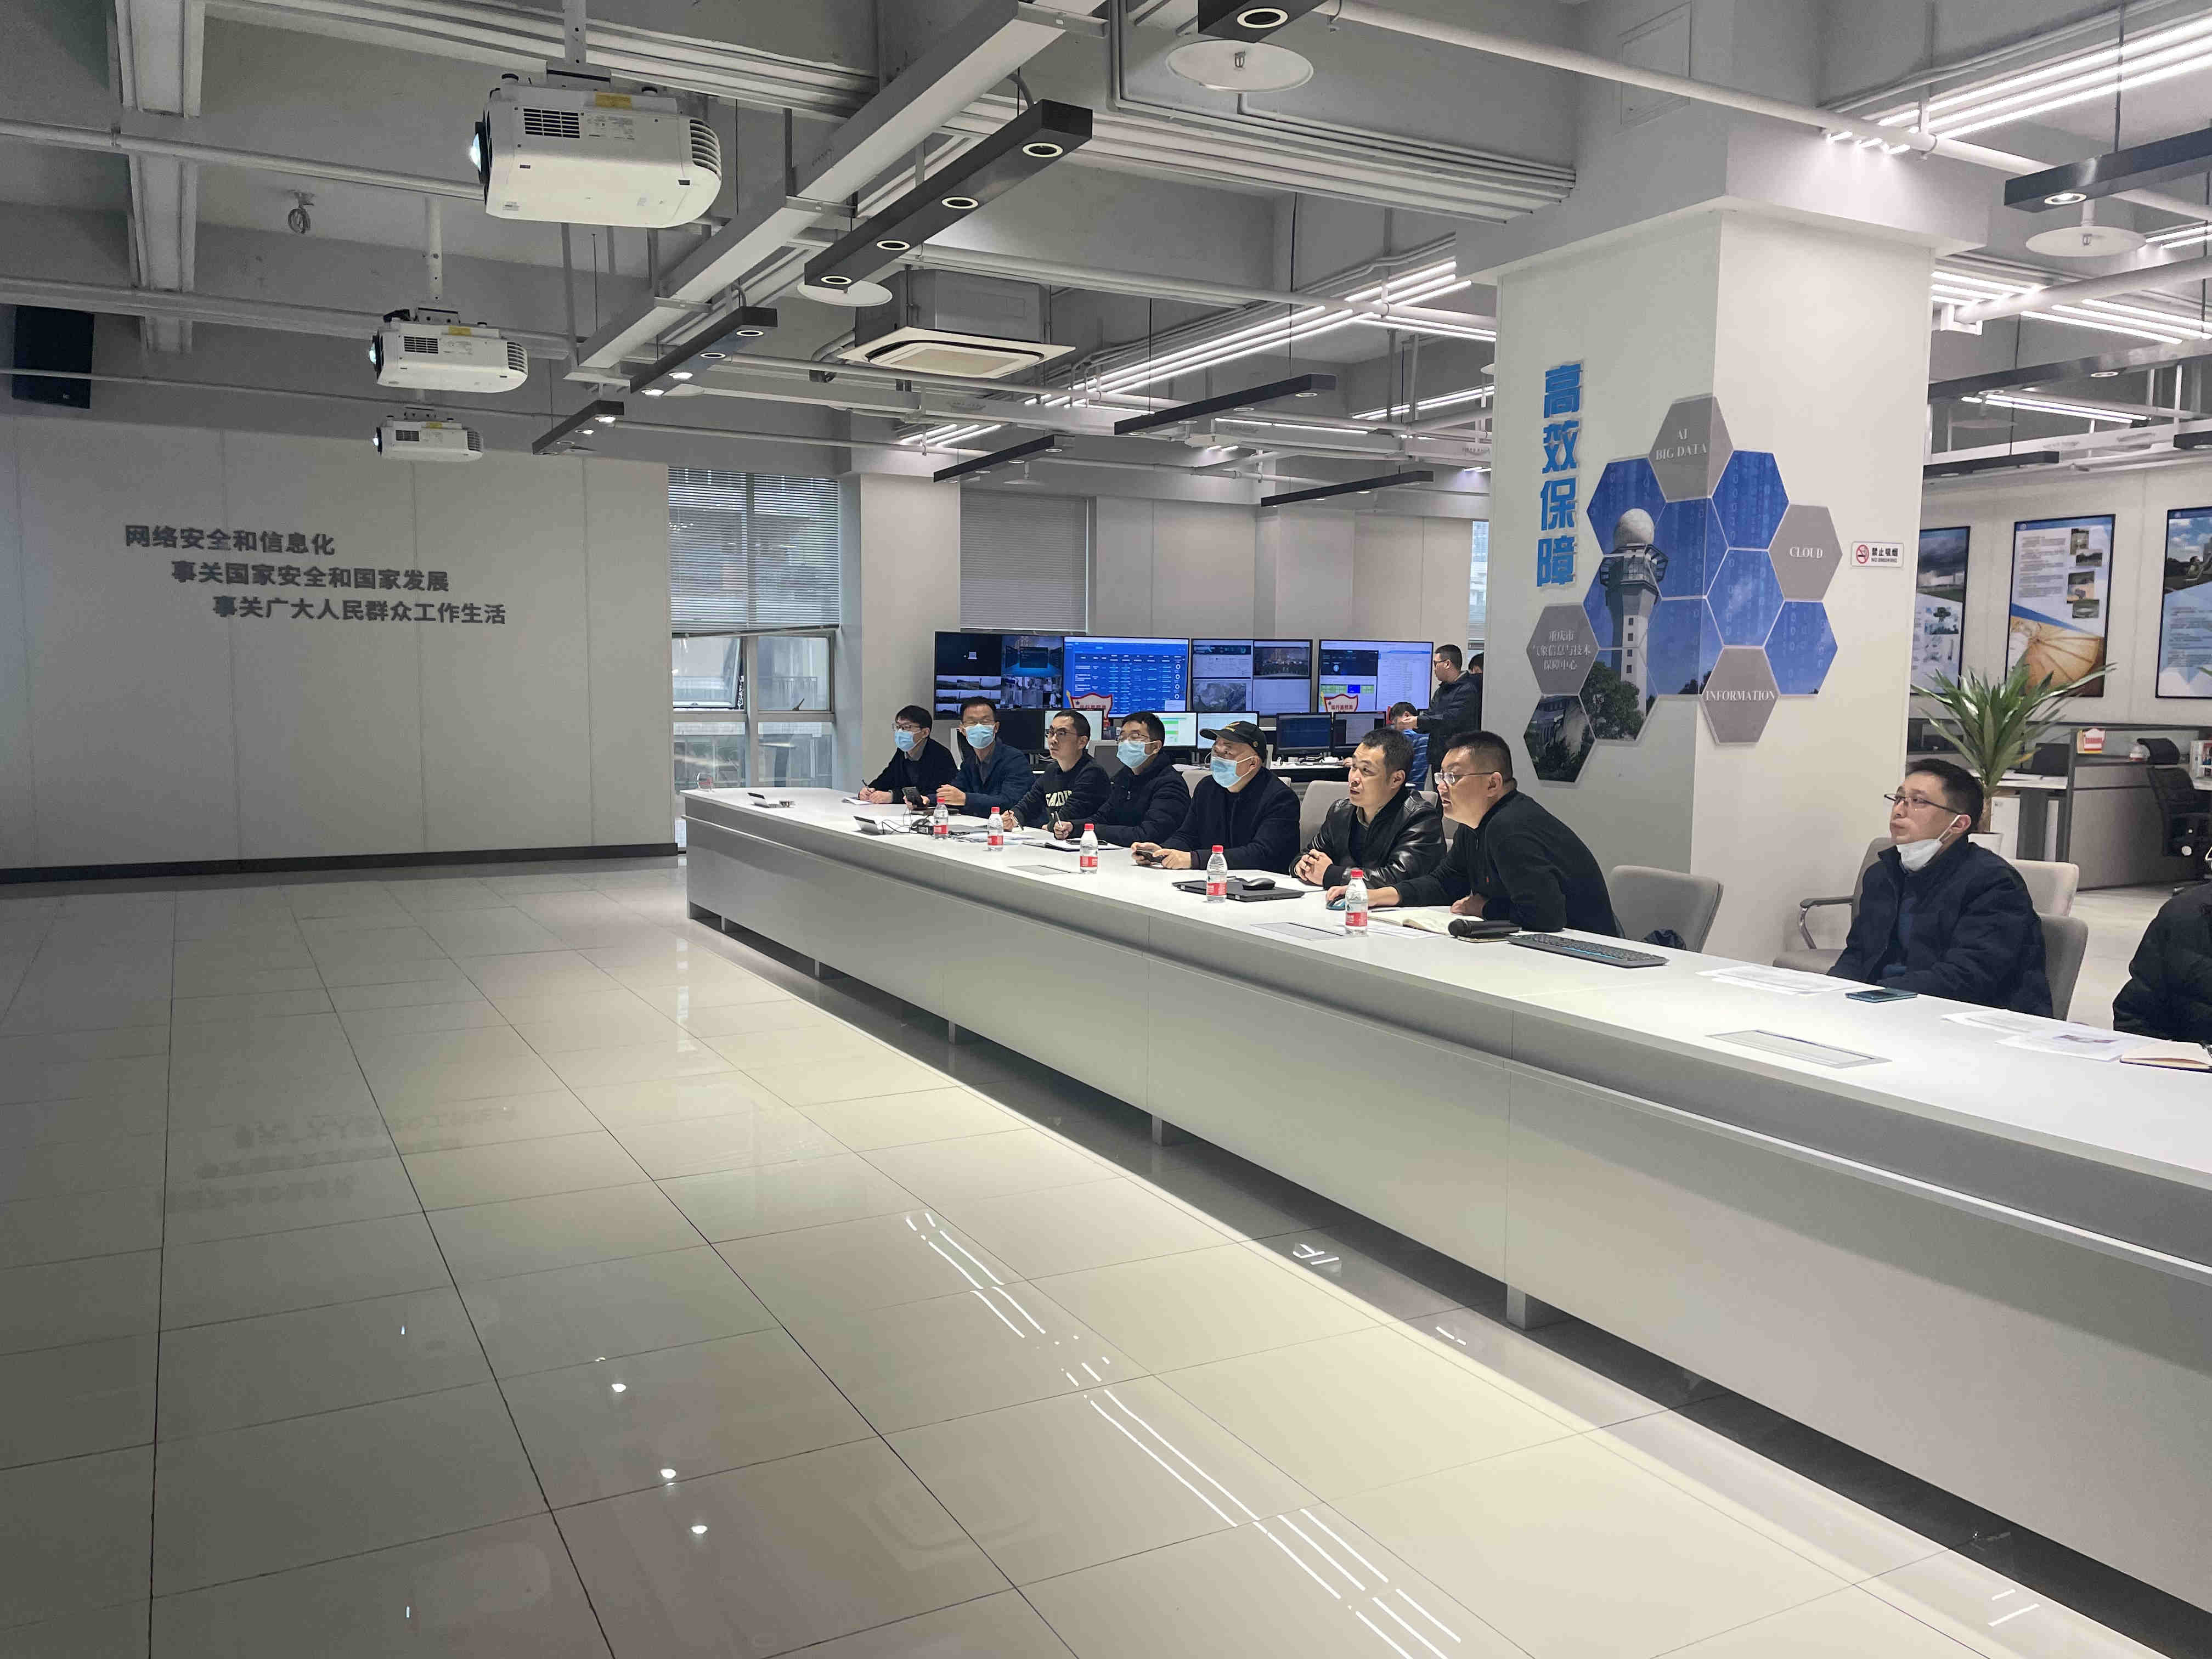 重庆空管分局气象台赴重庆市气象信息与技术保障中心开展技术交流